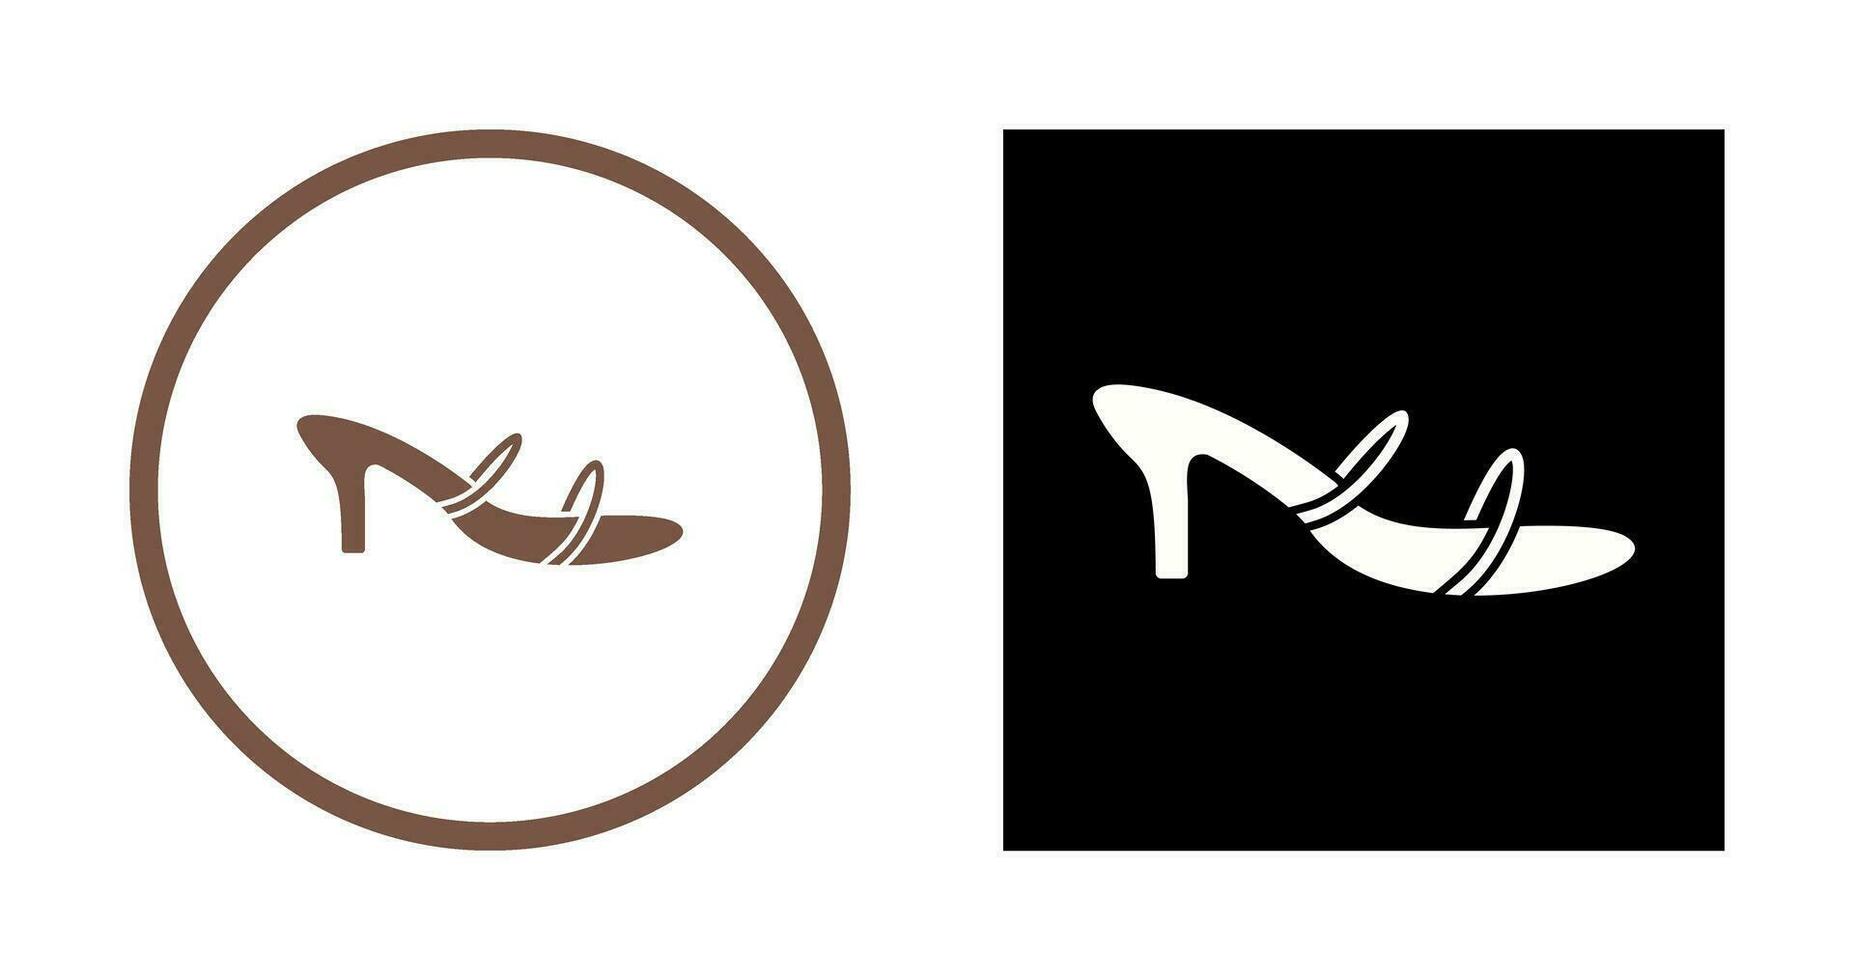 ícone de vetor de sandálias elegantes